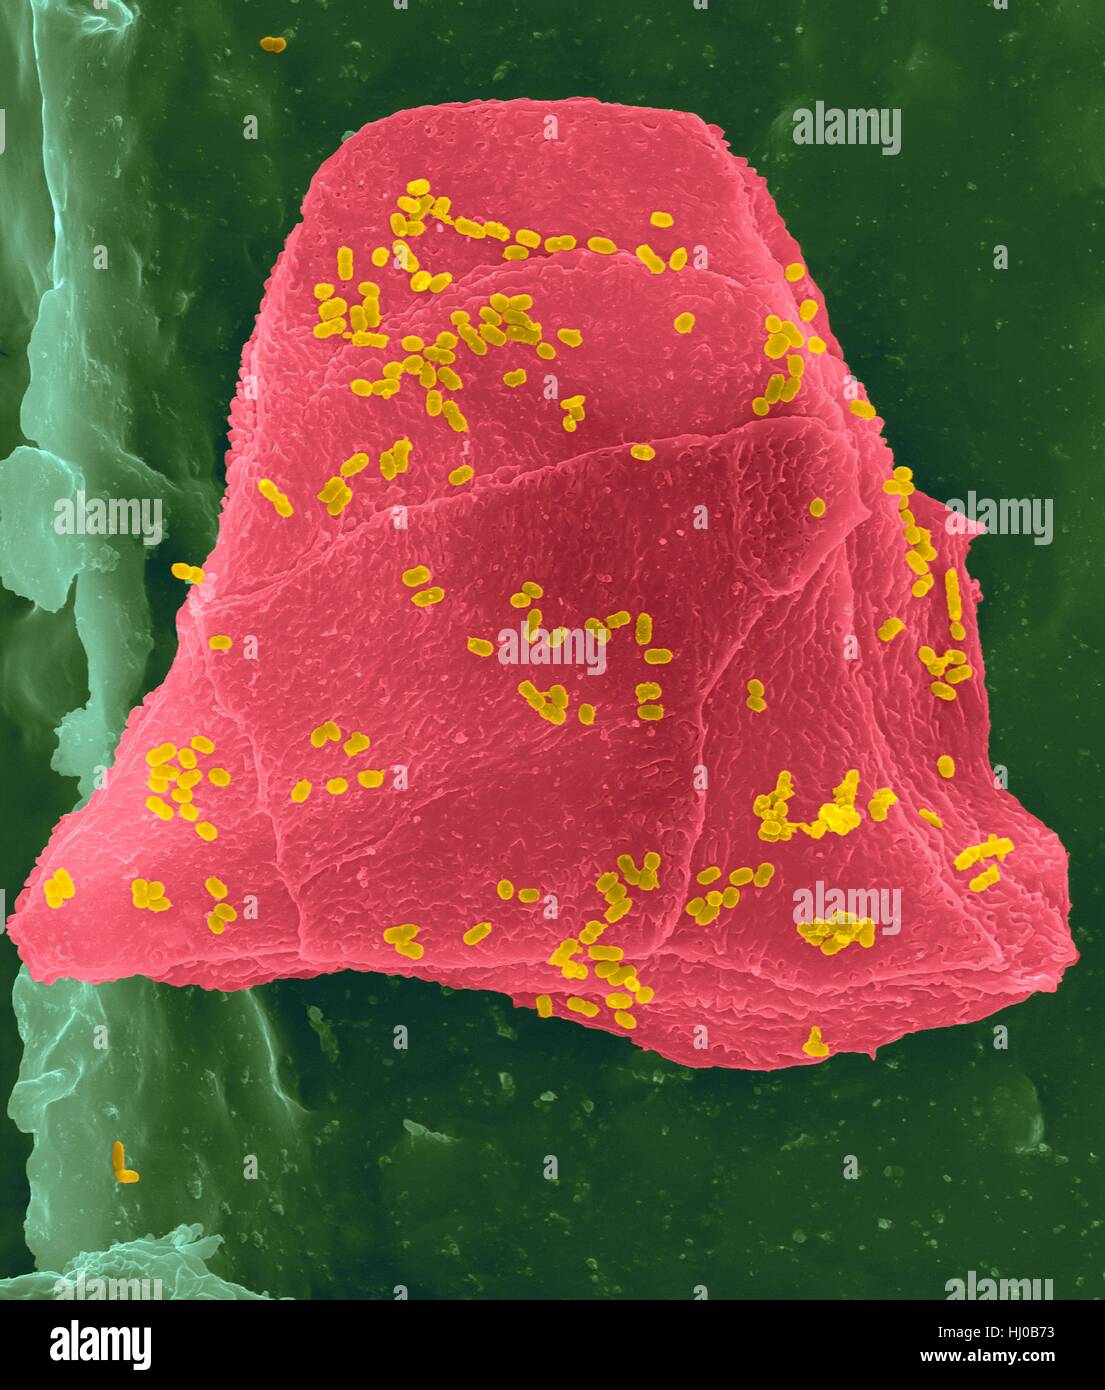 Wachs-Zahnseide mit Wange Zellen (rosa) Bakterien (gelb) auf Zahnseide Fasern (grün), farbige scanning Electron Schliffbild (SEM) verwendet. Wangenzellen bekommen oft von in Ihrem Mund abgeschabt, wenn Ihre Zähne Zahnseide. Zahlreiche Bakterien vorhanden sind als Teil der normalen Mund Flora. Bakterielle plaque Stockfoto